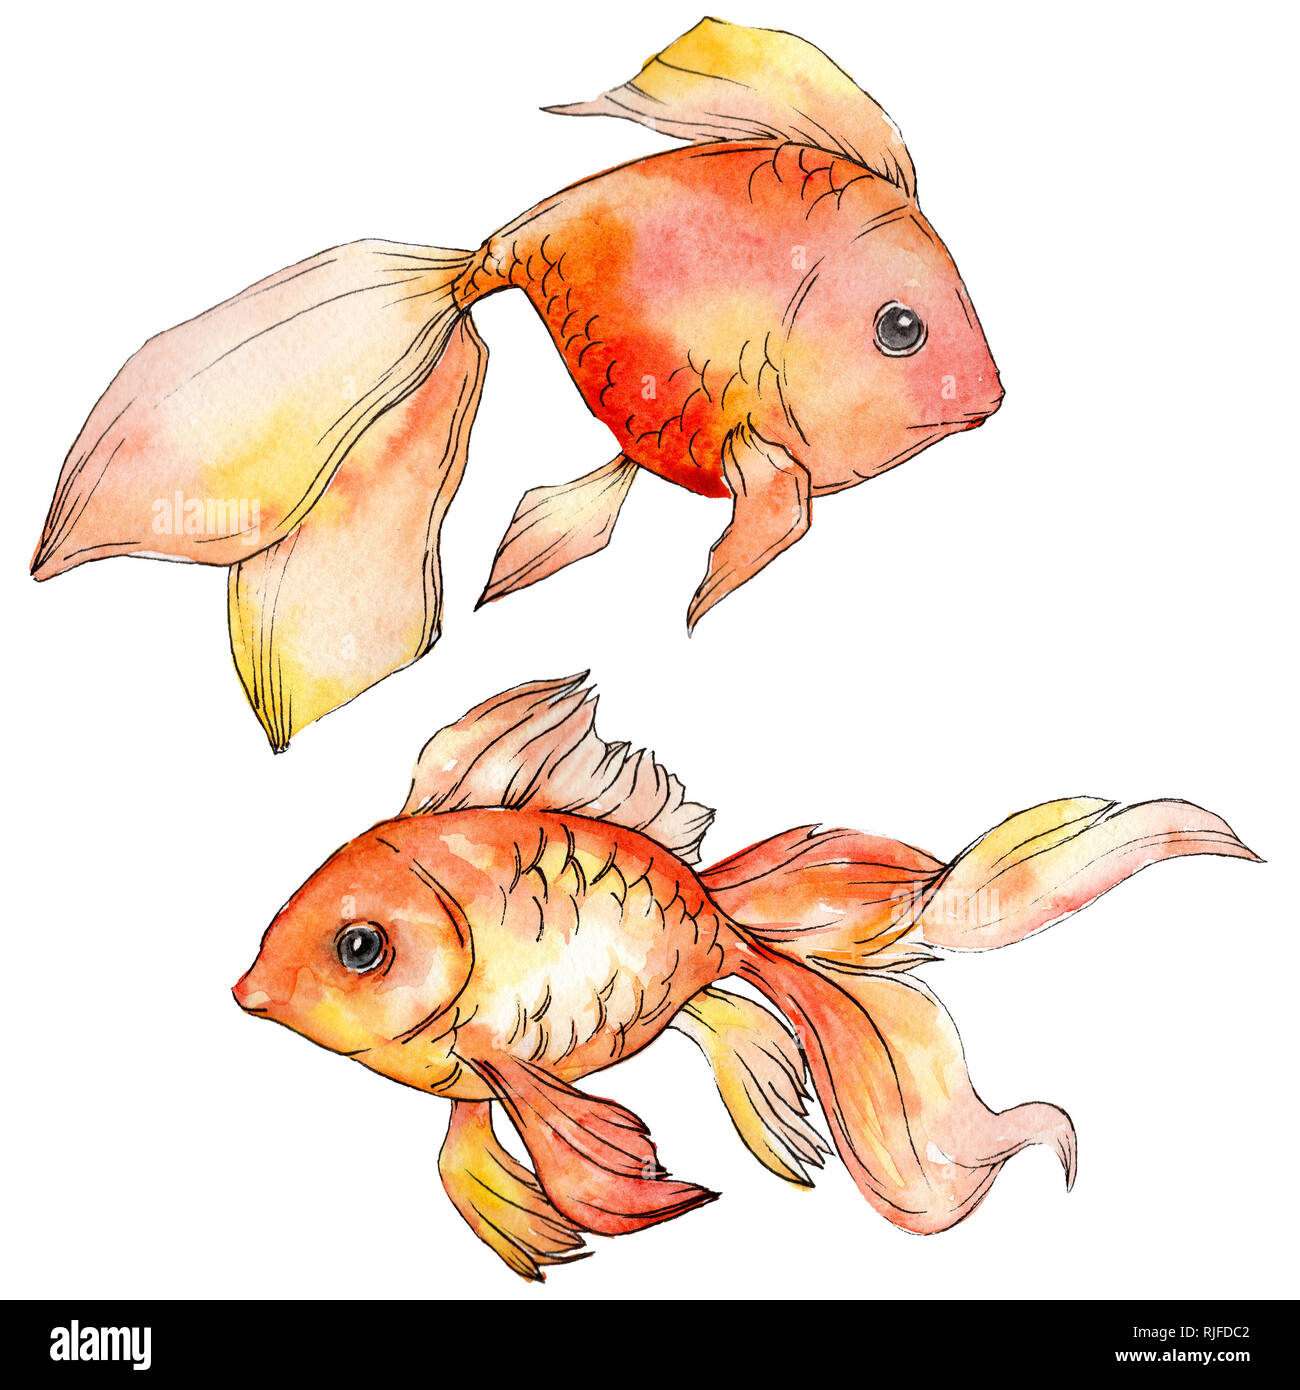 Aquarelle sous-marine aquatique poissons rouges tropicaux colorés. Mer Rouge et poissons exotiques à l'intérieur. Illustration d'arrière-plan. Aquarelle Dessin fashi Banque D'Images